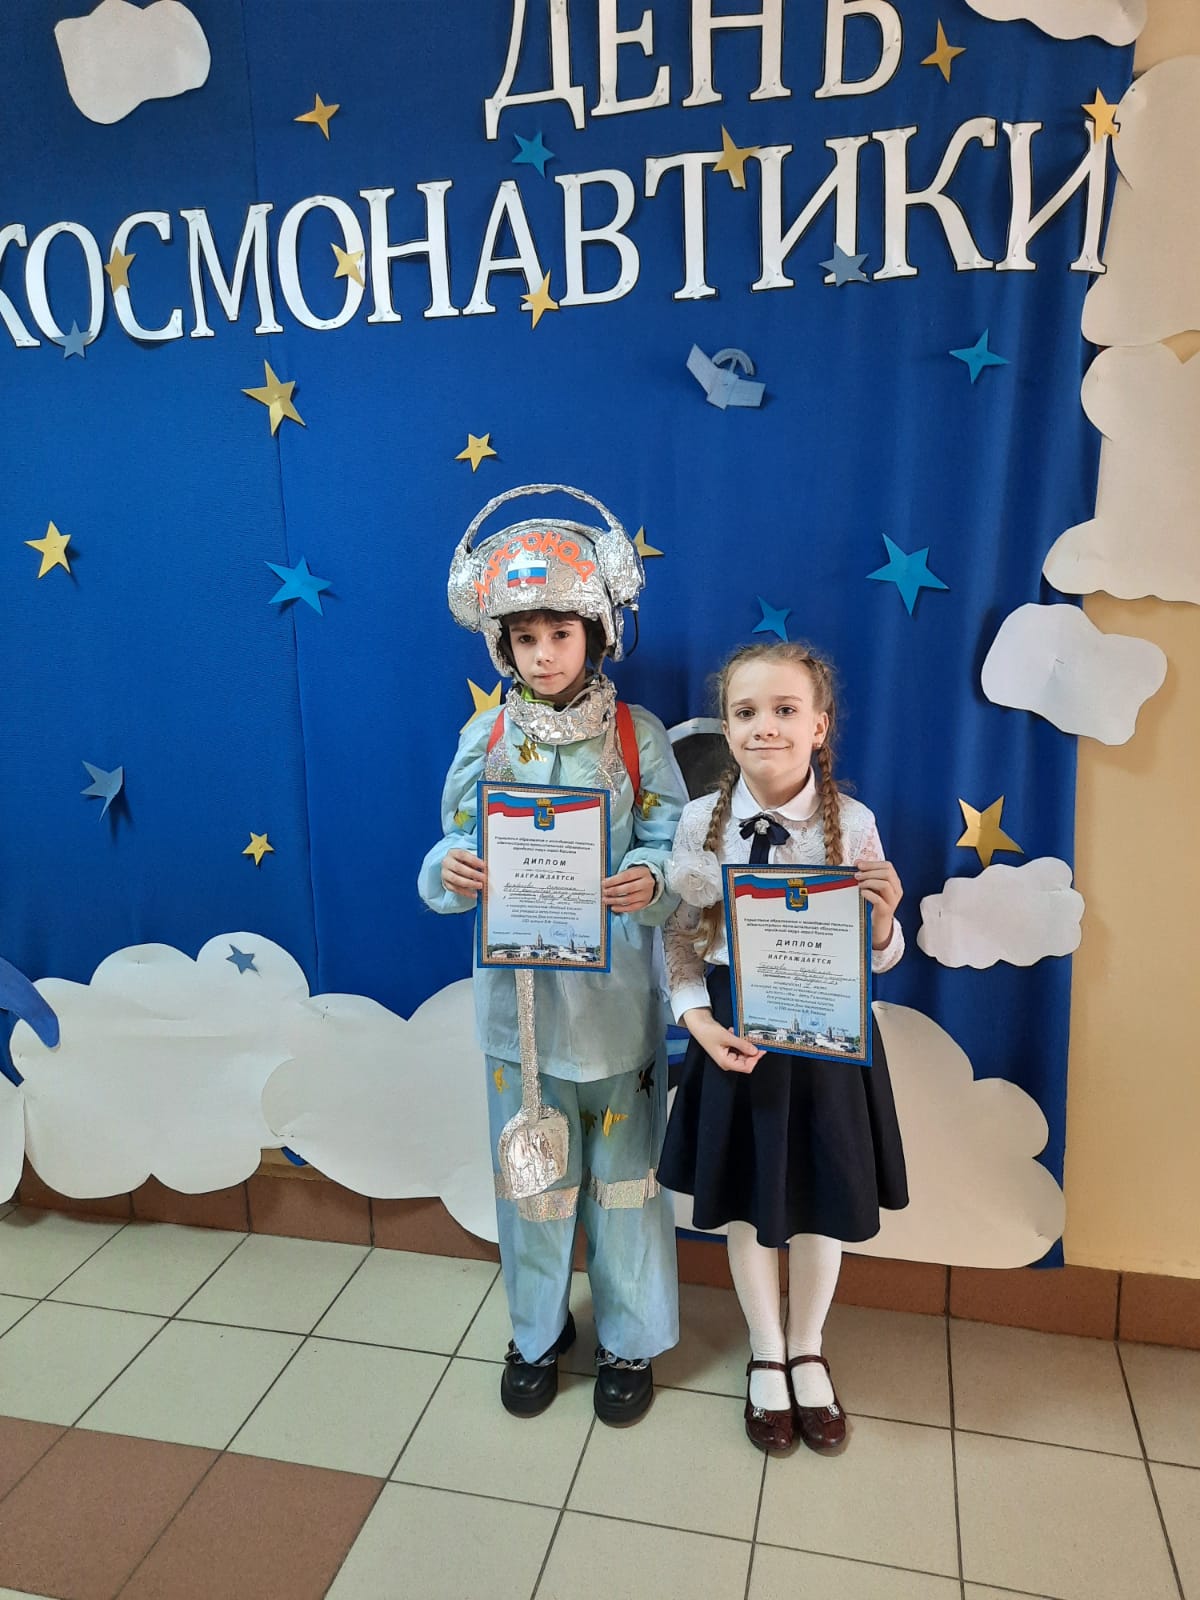 Мероприятия ко Дню космонавтики. День космонавтики мероприятия в школе. День космонавтики мероприятие для начальной школы